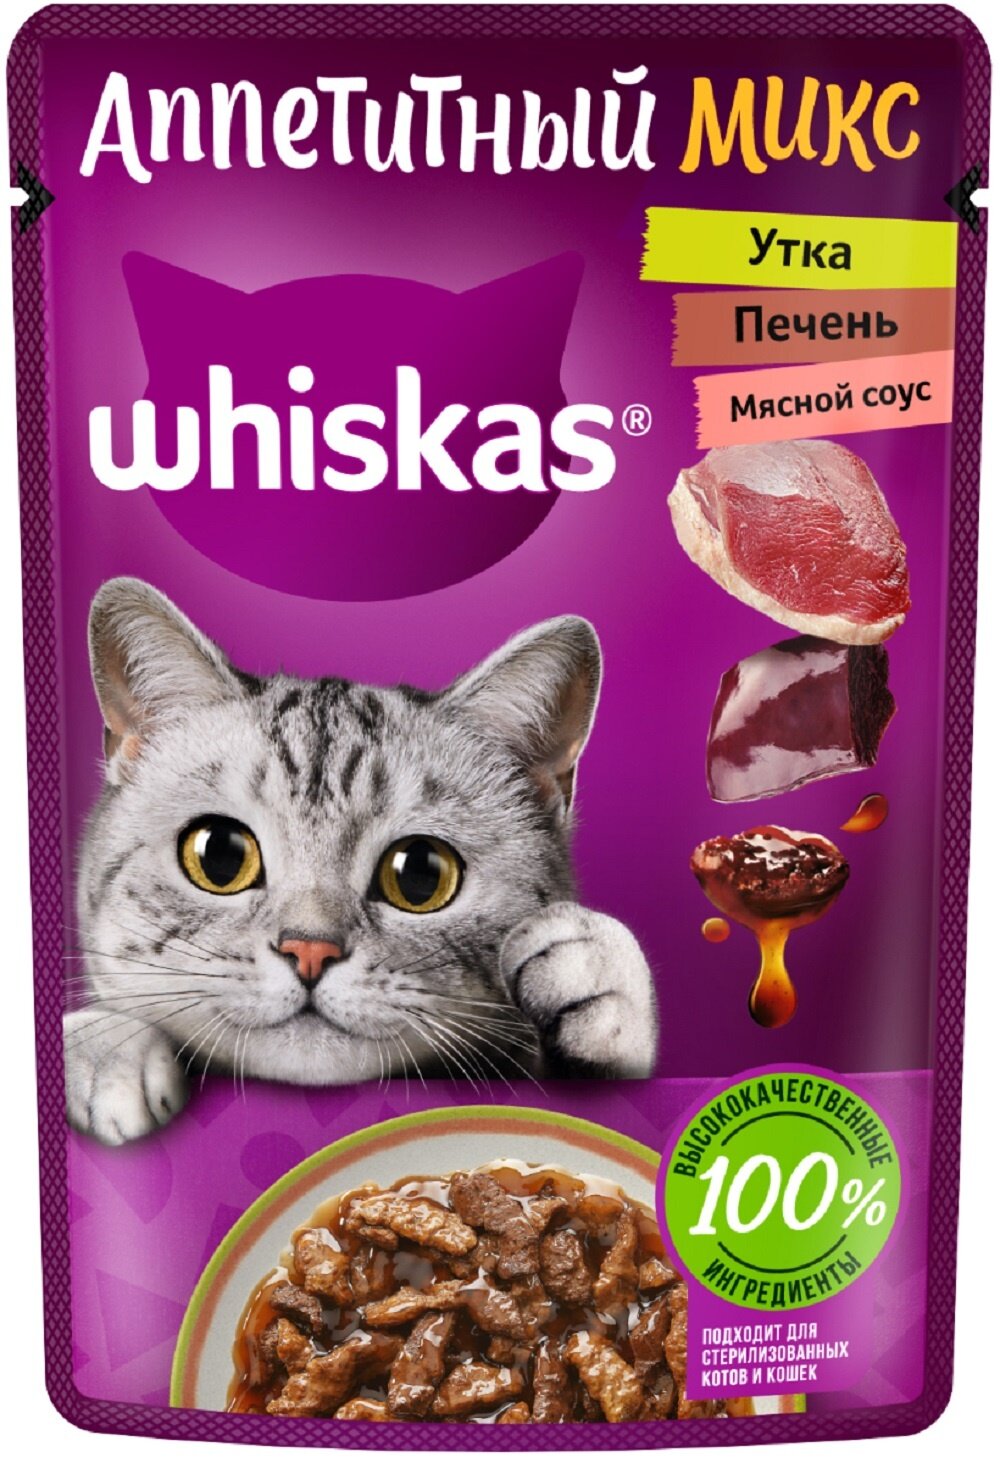 Влажный корм Whiskas «Аппетитный микс» для кошек с уткой и печенью в мясном соусе